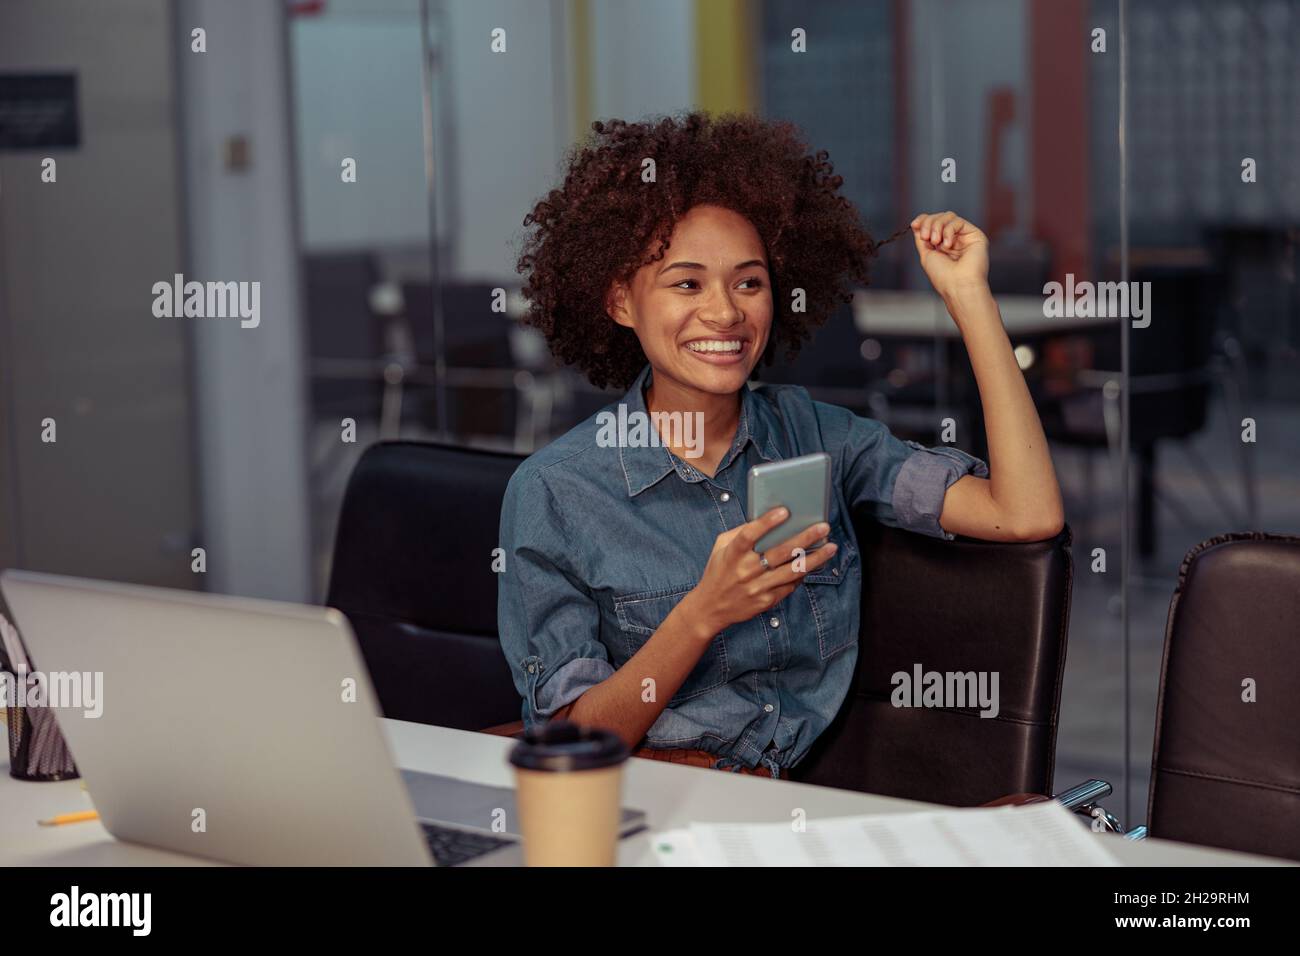 Une jolie femme souriante utilisant un téléphone portable sur son lieu de travail Banque D'Images